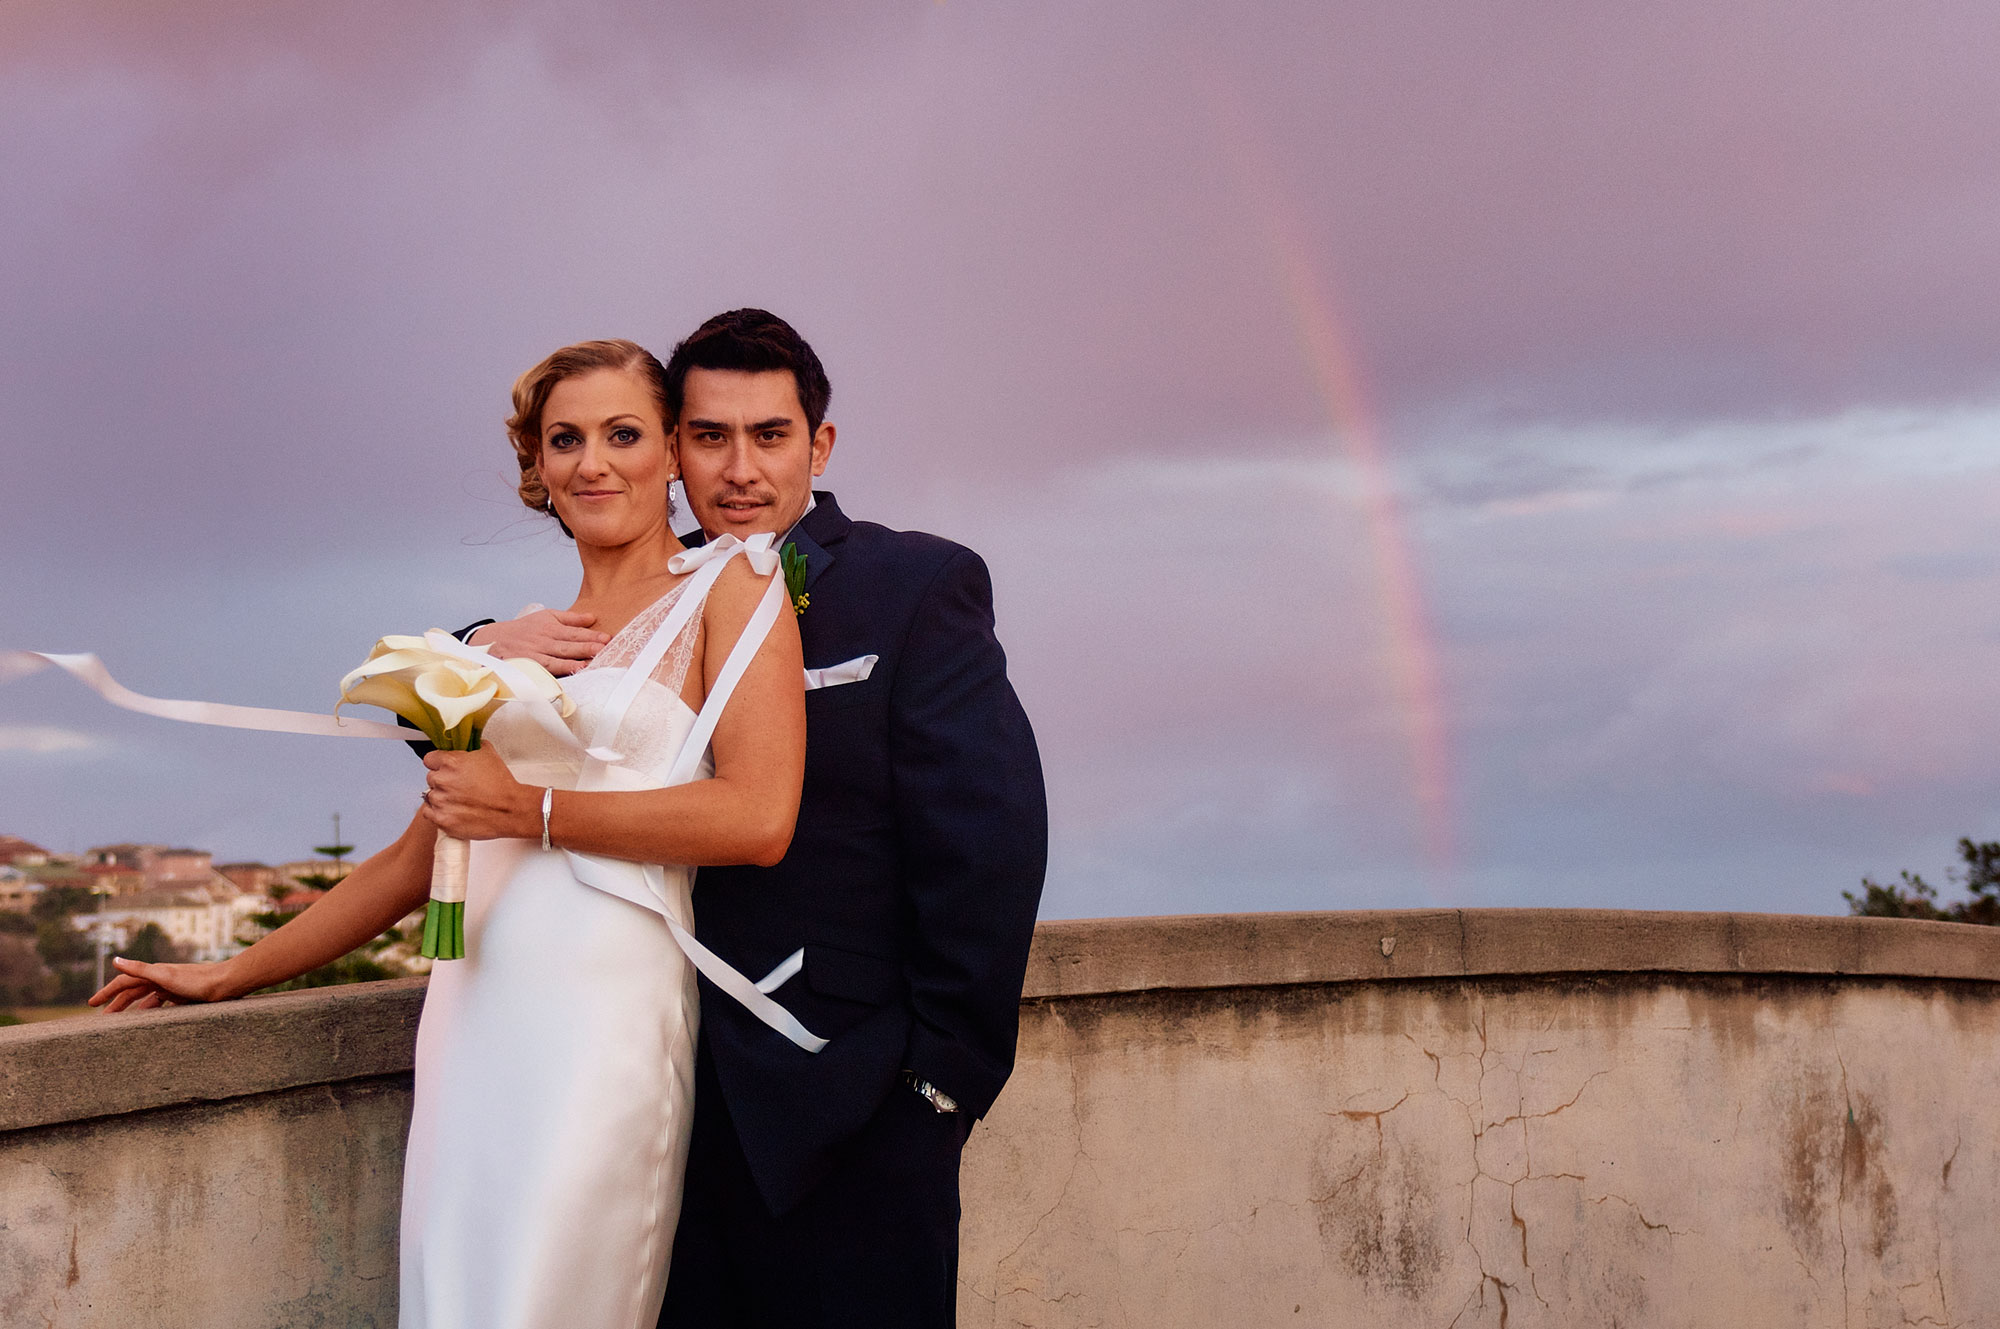 Sunset wedding photos Bondi